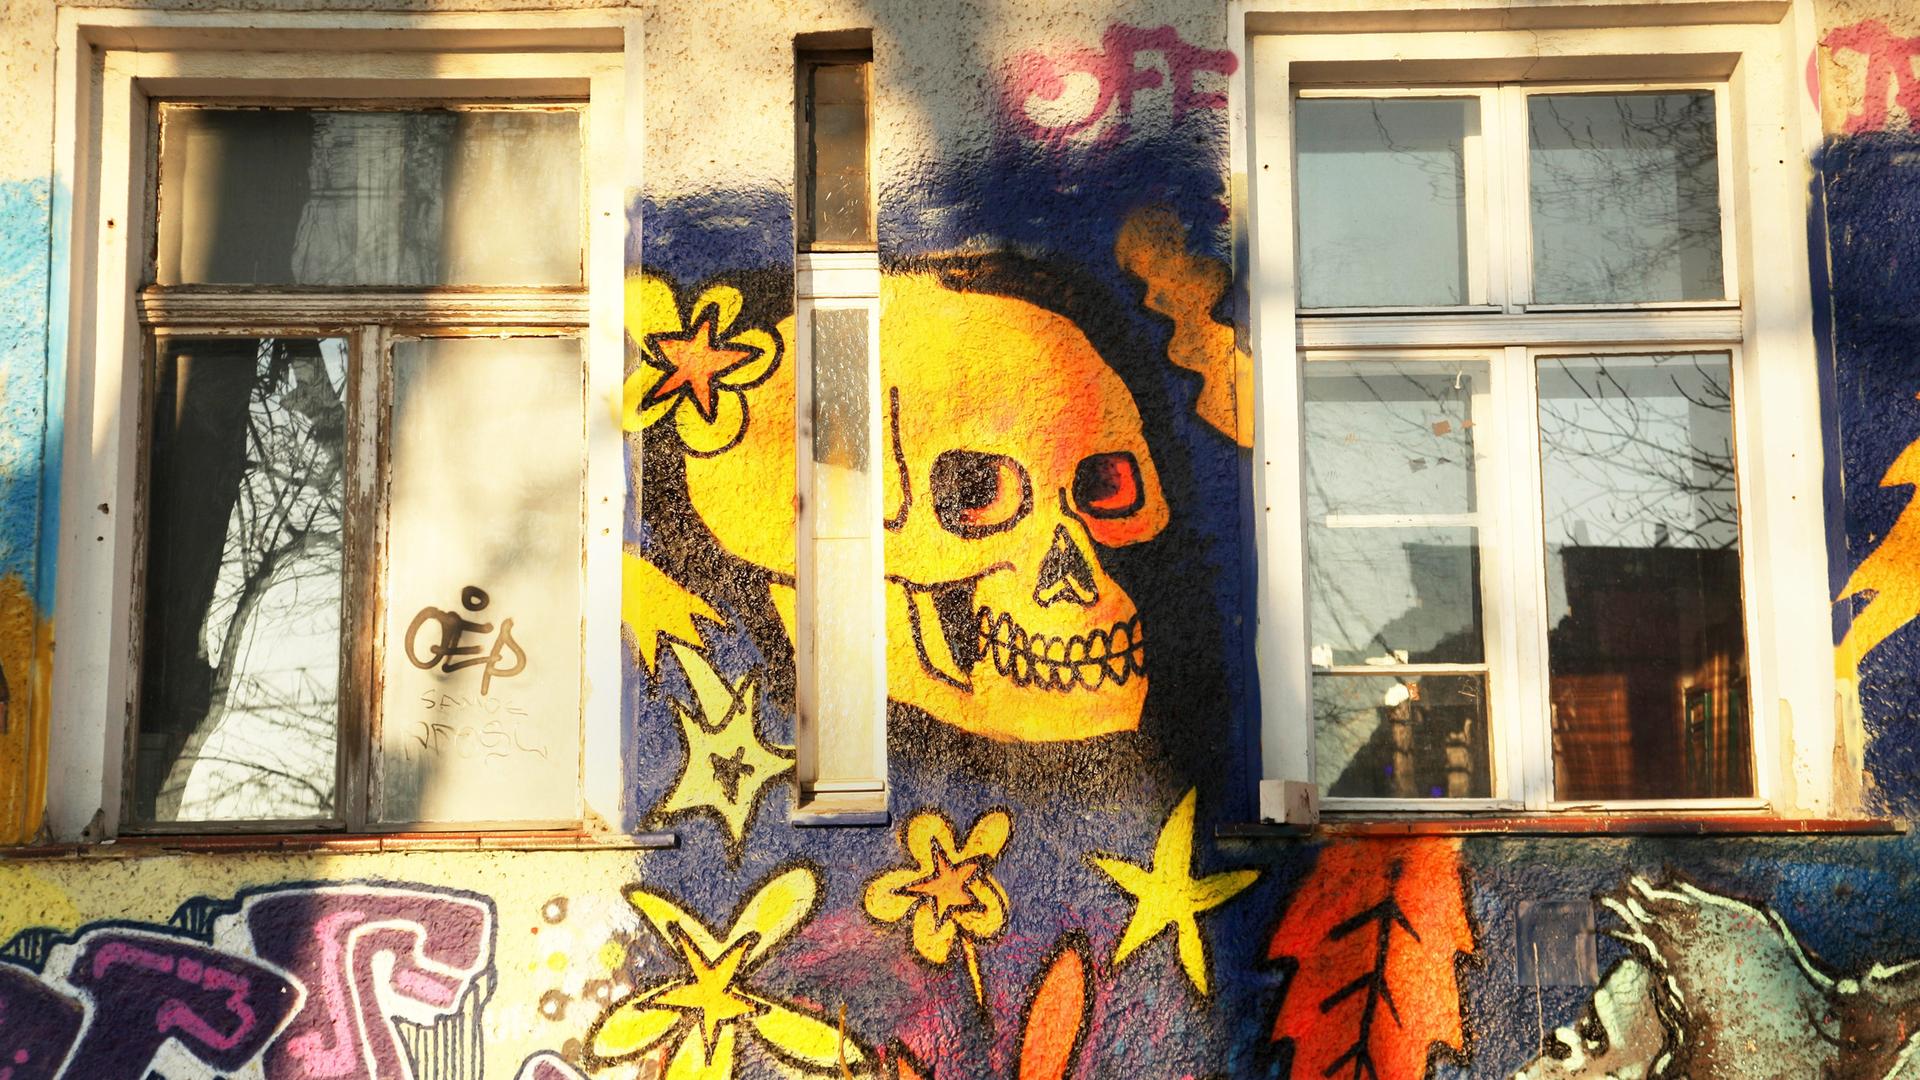 Ein gelber Totenkopf grinst als Wandbild zwischen zwei Fenstern.